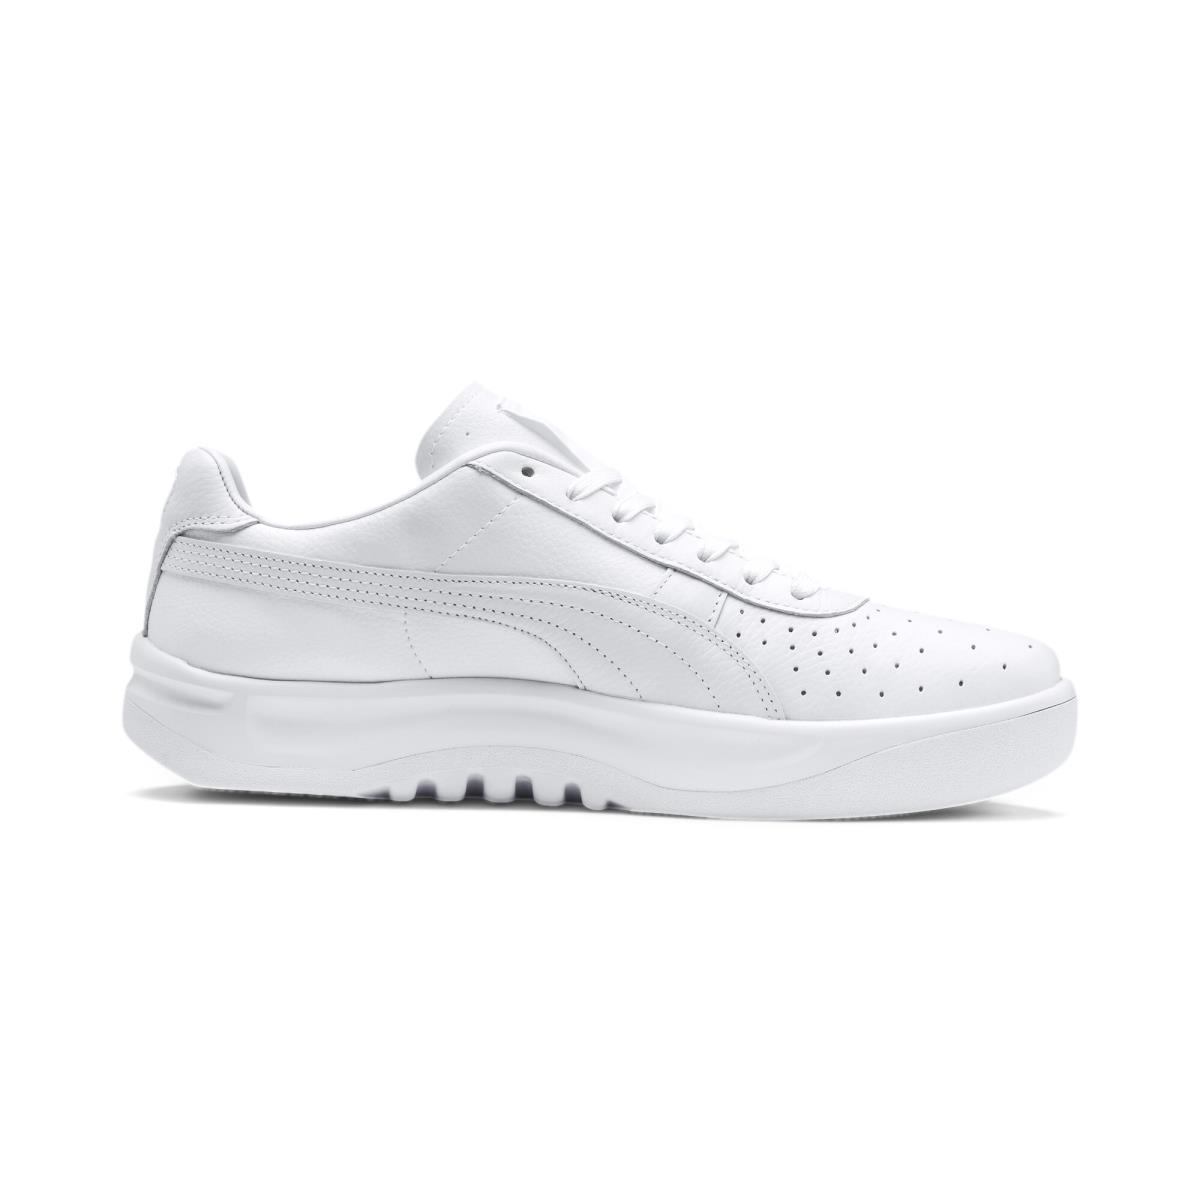 Puma shoes Sport Classics - White - White/White 0